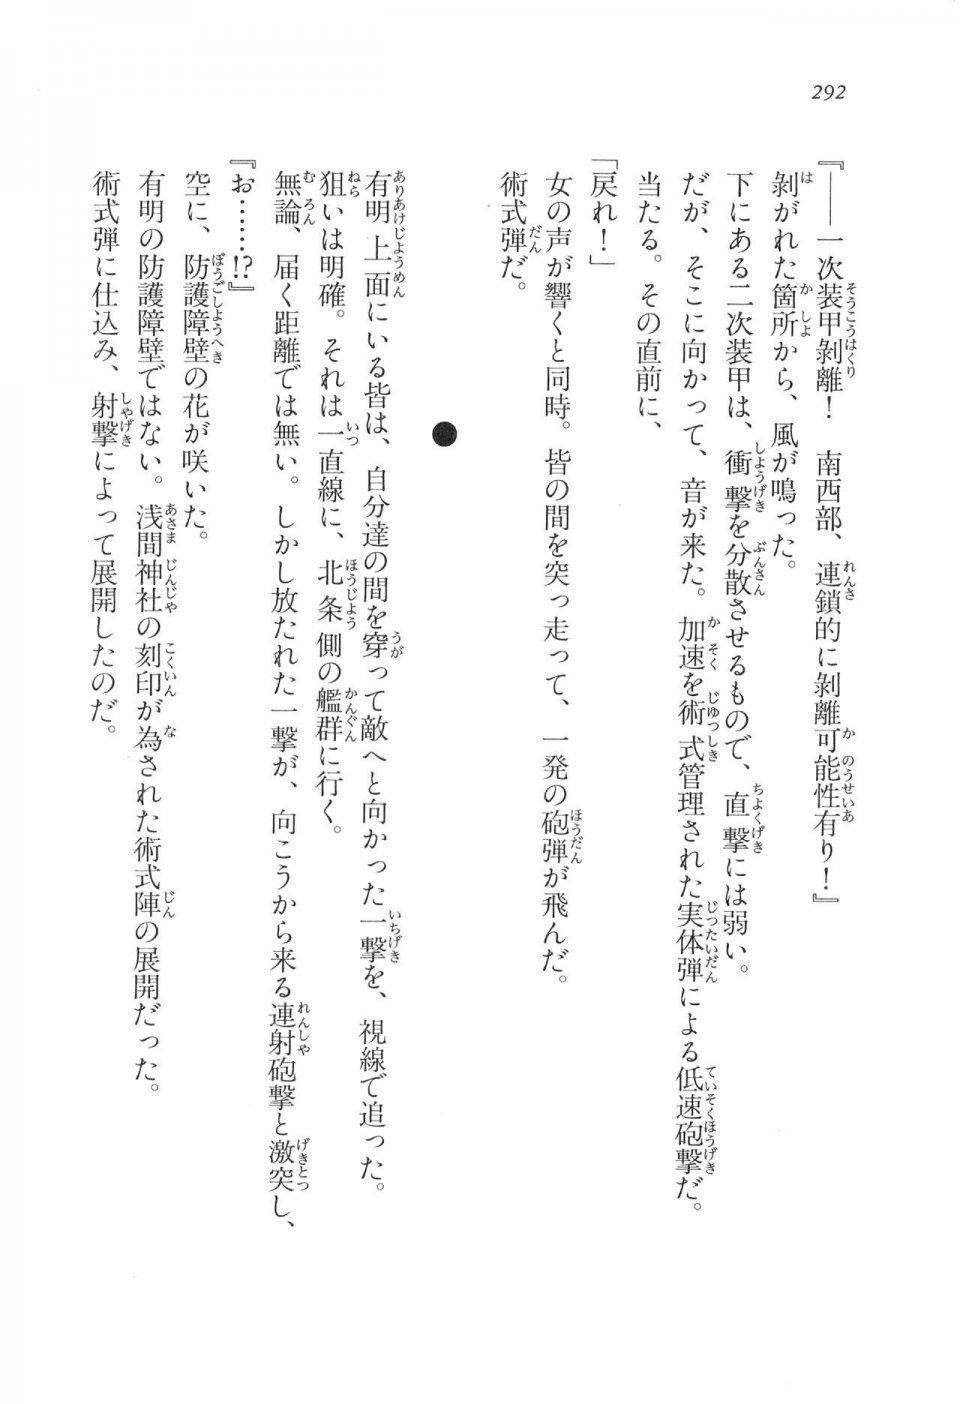 Kyoukai Senjou no Horizon LN Vol 11(5A) - Photo #292